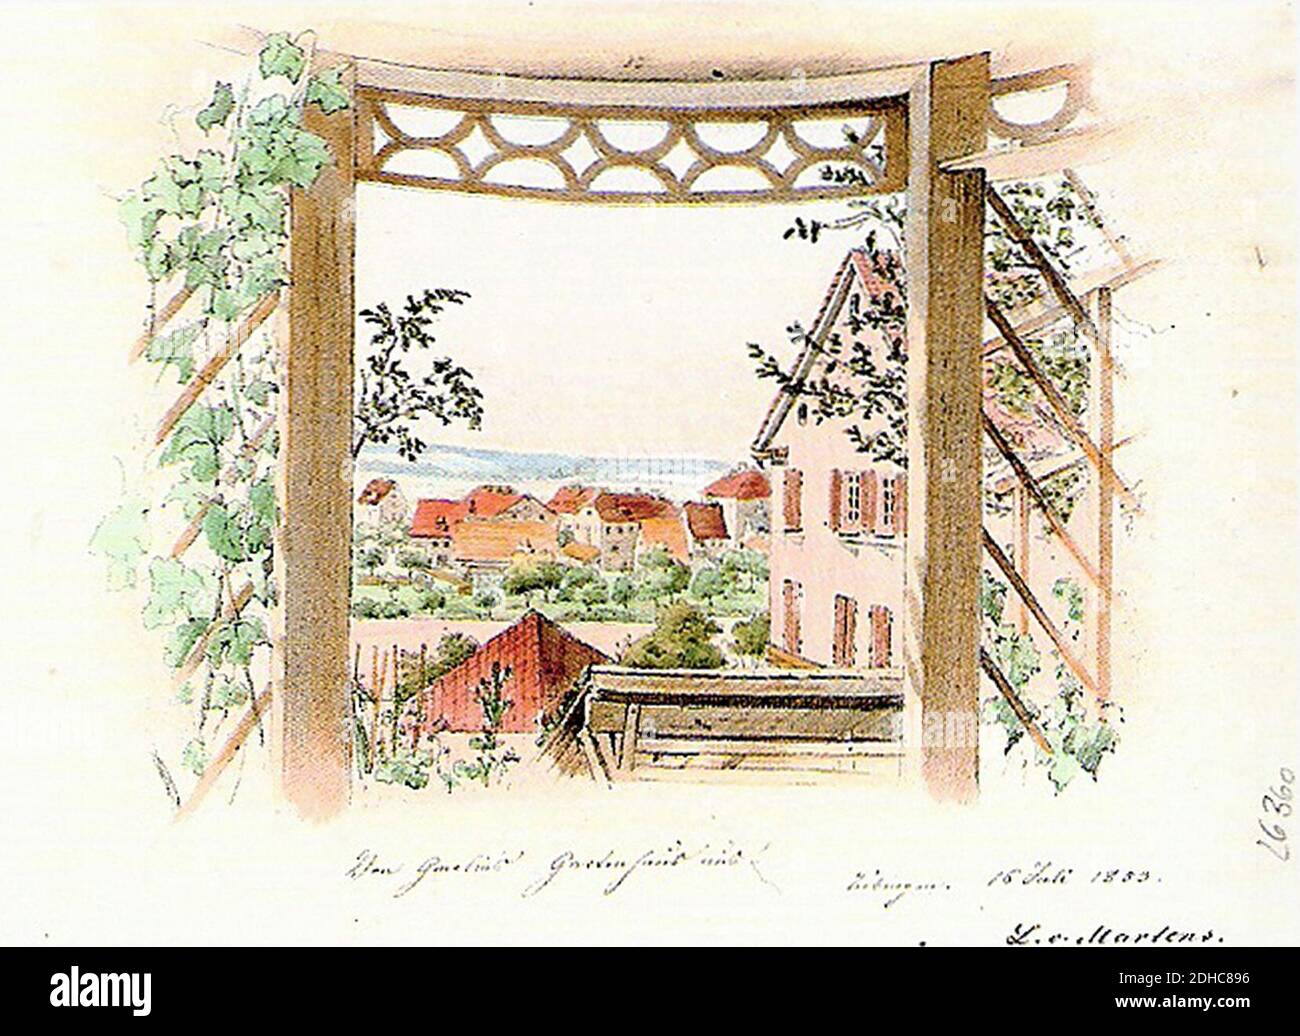 L v Martens - Von Gmelins Gartenhaus aus aquaZeichnung 16.7.1853 Inv4536 (SW244). Stock Photo